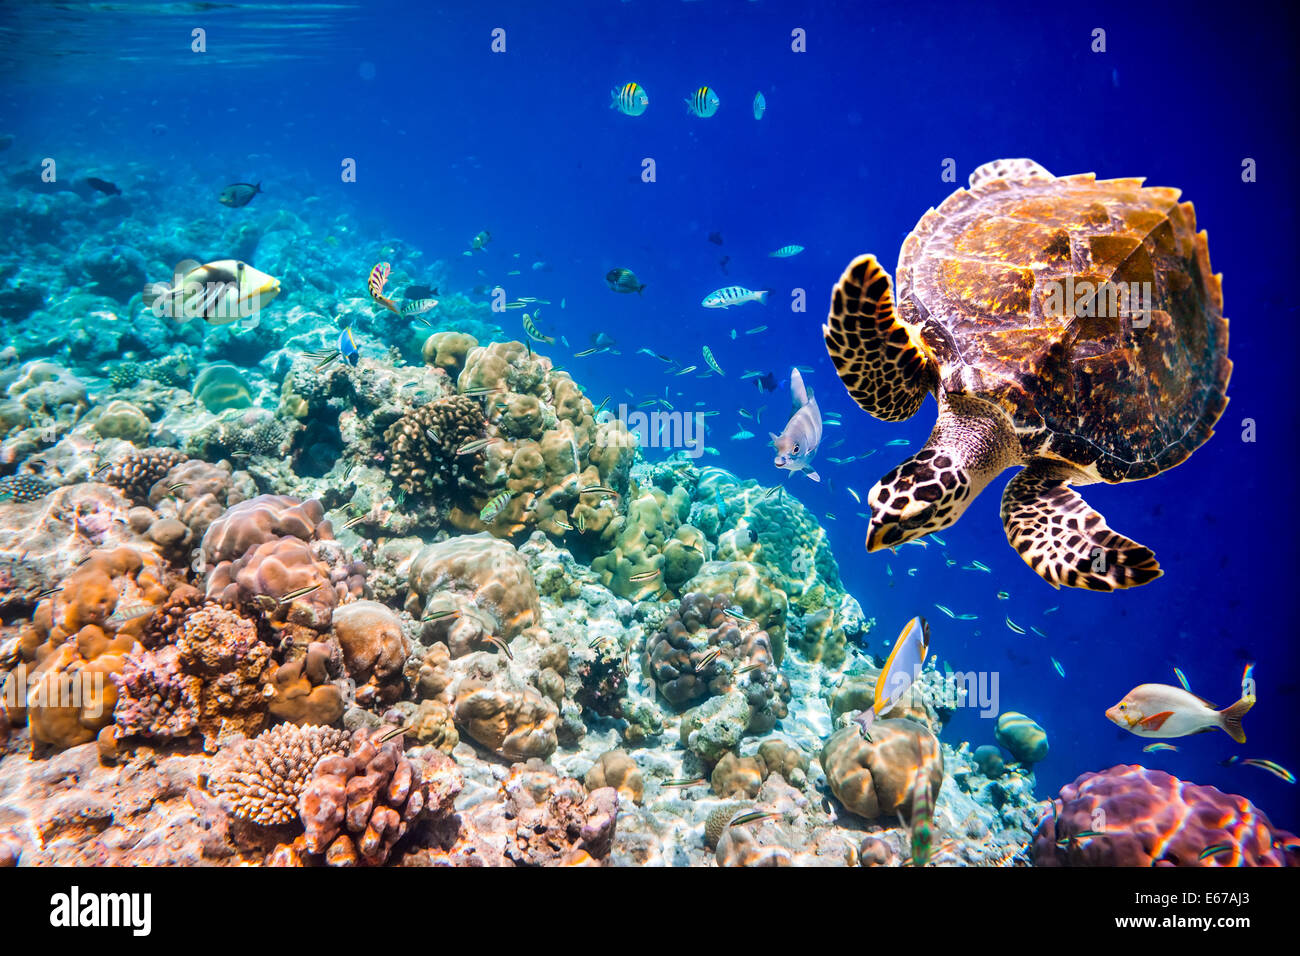 - La tortue imbriquée Eretmochelys imbricata flotte sous l'eau. Les récifs coralliens de l'océan Indien aux Maldives. Banque D'Images